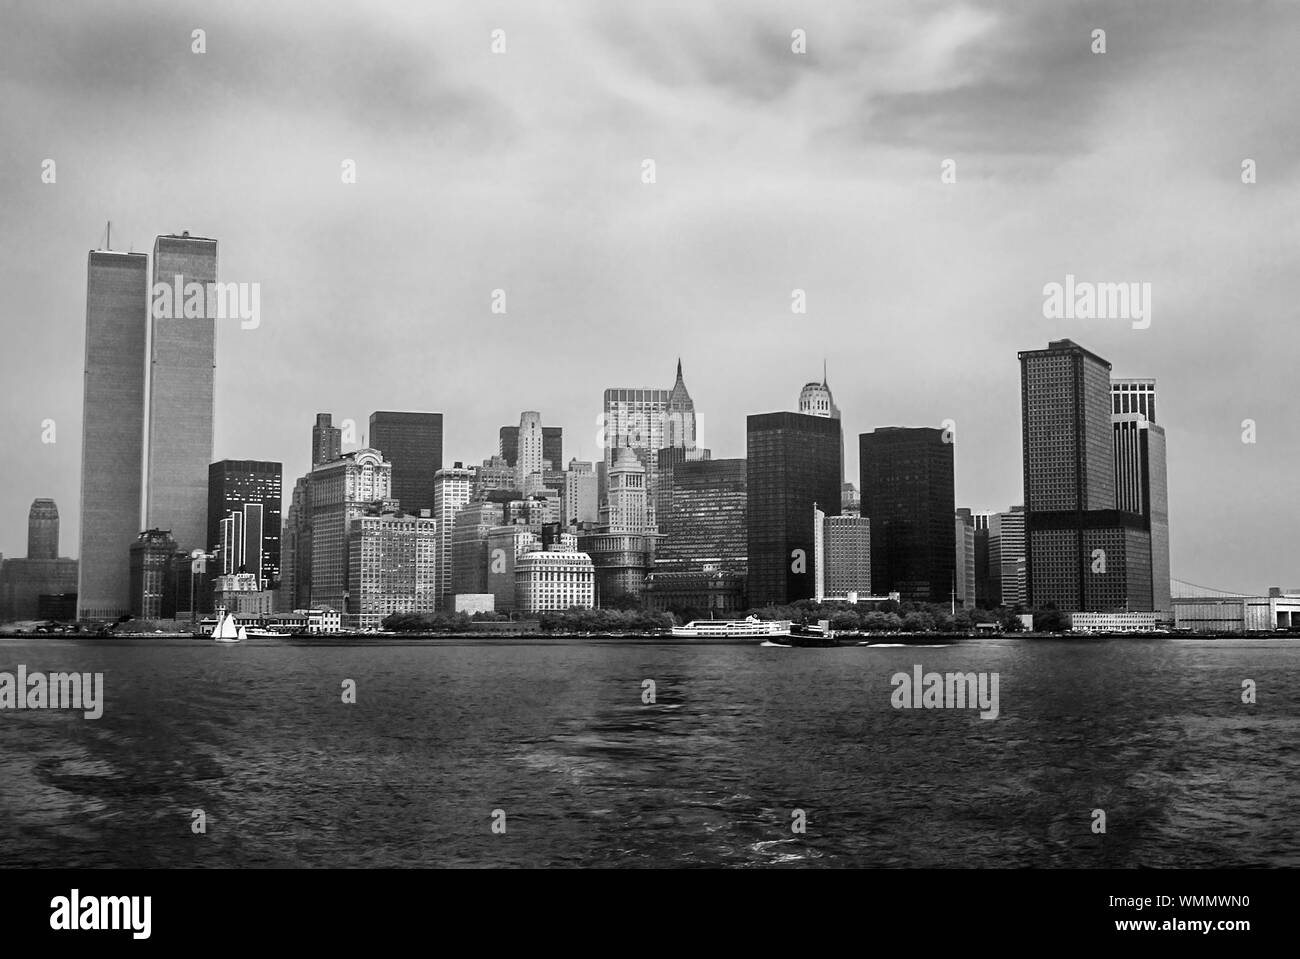 Twin Towers in NEW YORK. Archivierung und das historische Stadtbild von New York Skyline vom Hudson River mit World Trade Center. Lower Manhattan in New York City, USA Stockfoto